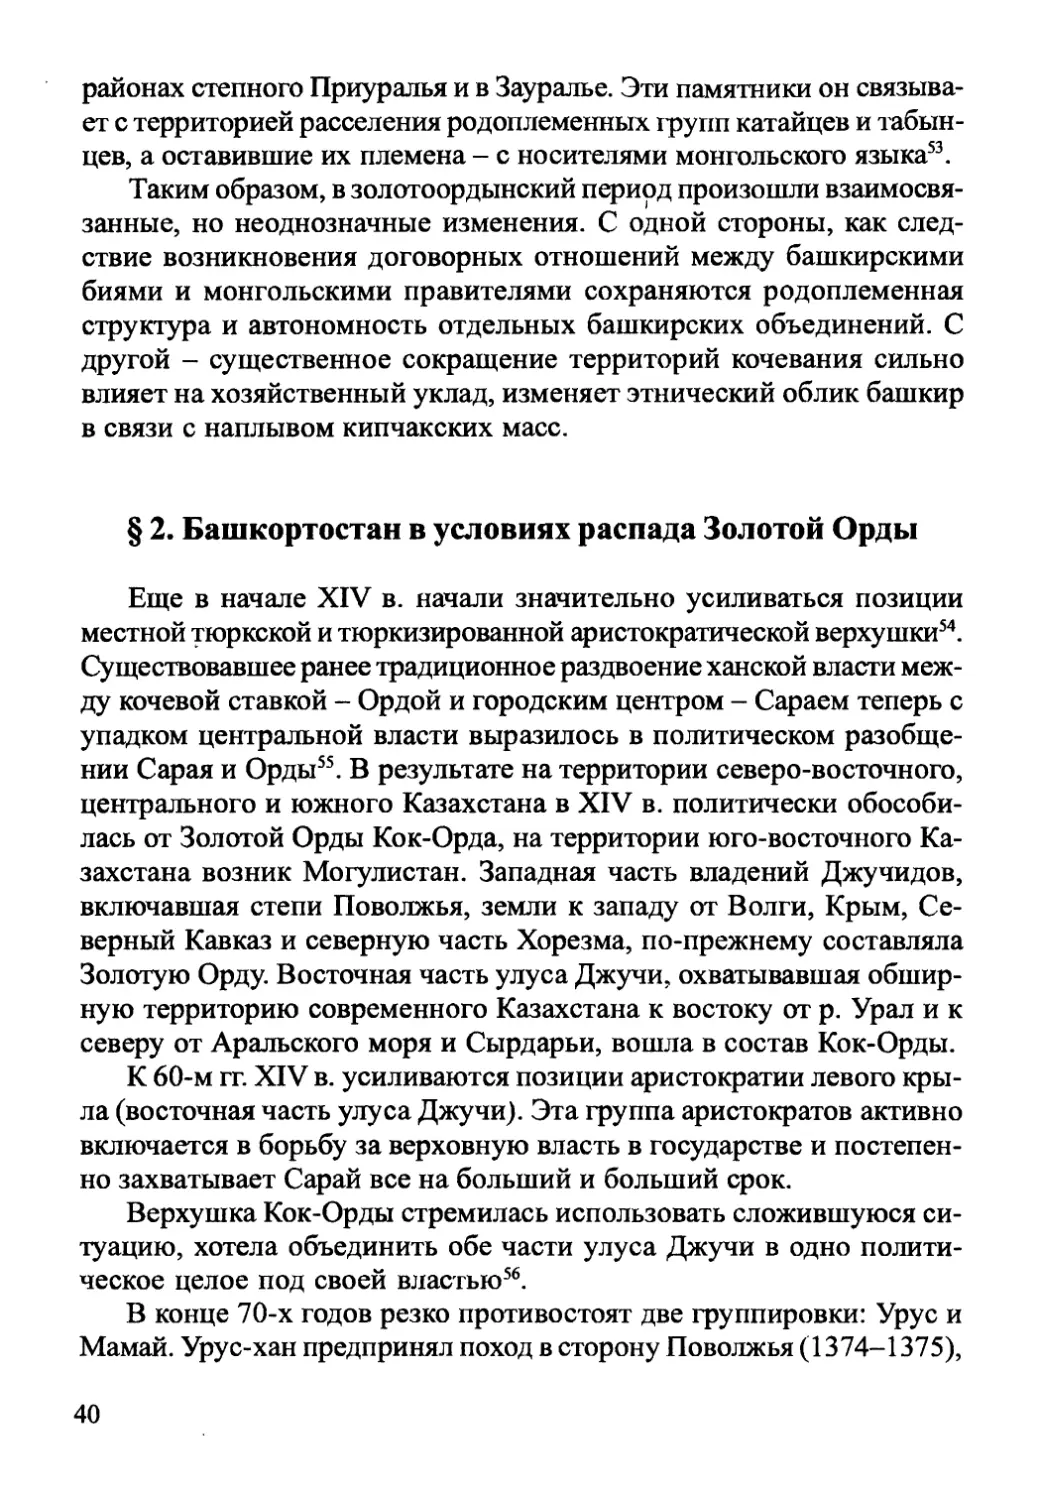 § 2. Башкортостан в условиях распада Золотой Орды